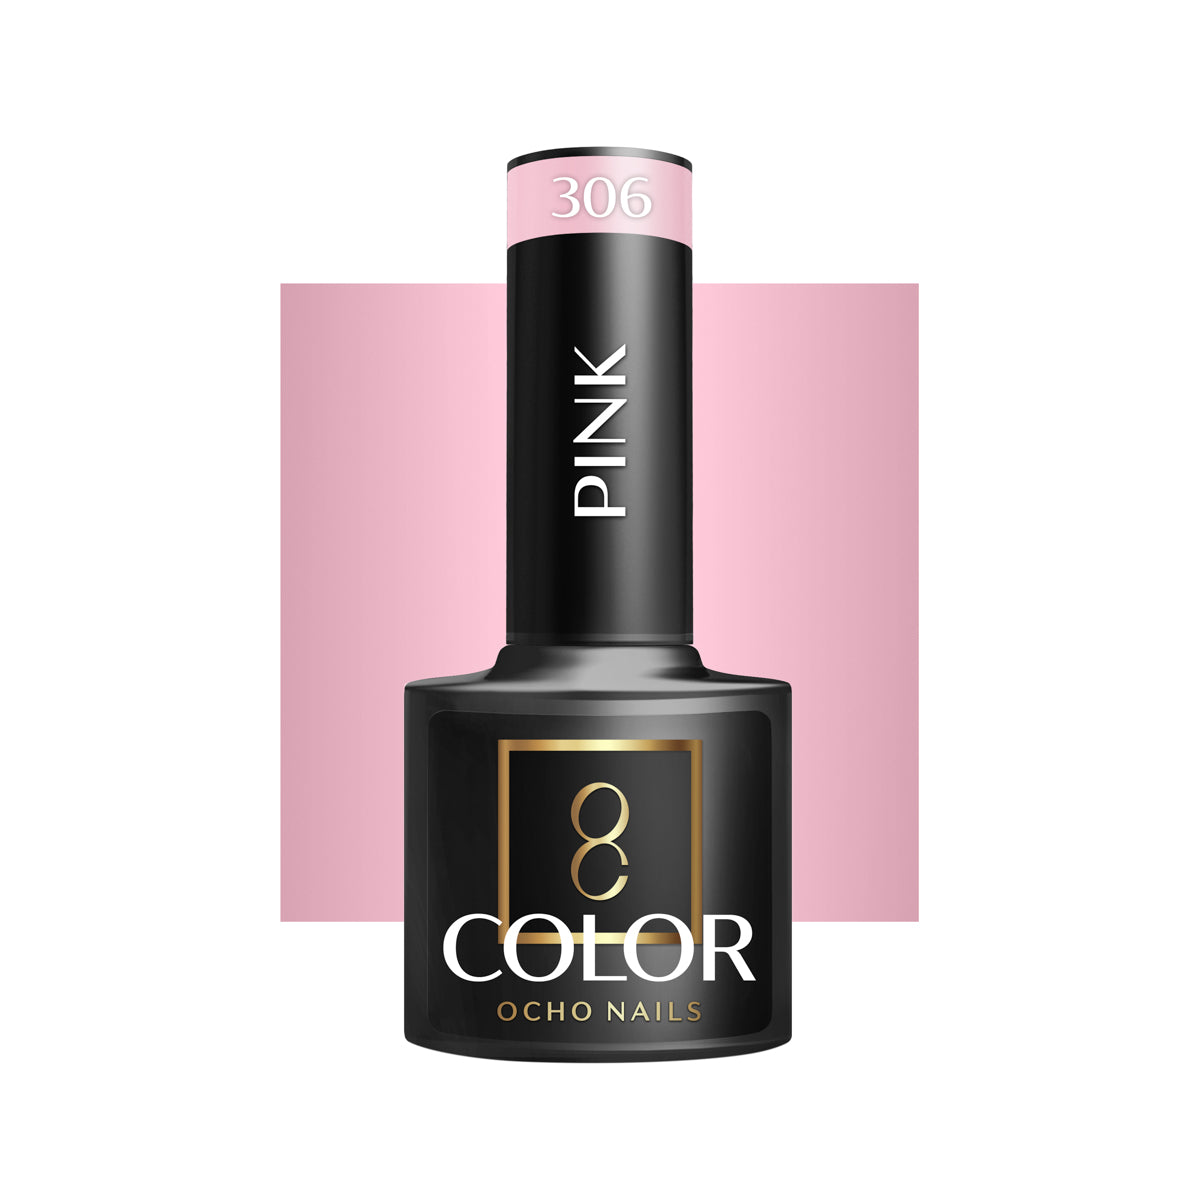 OCHO NAILS Hybride nagellak roze 306 -5 g